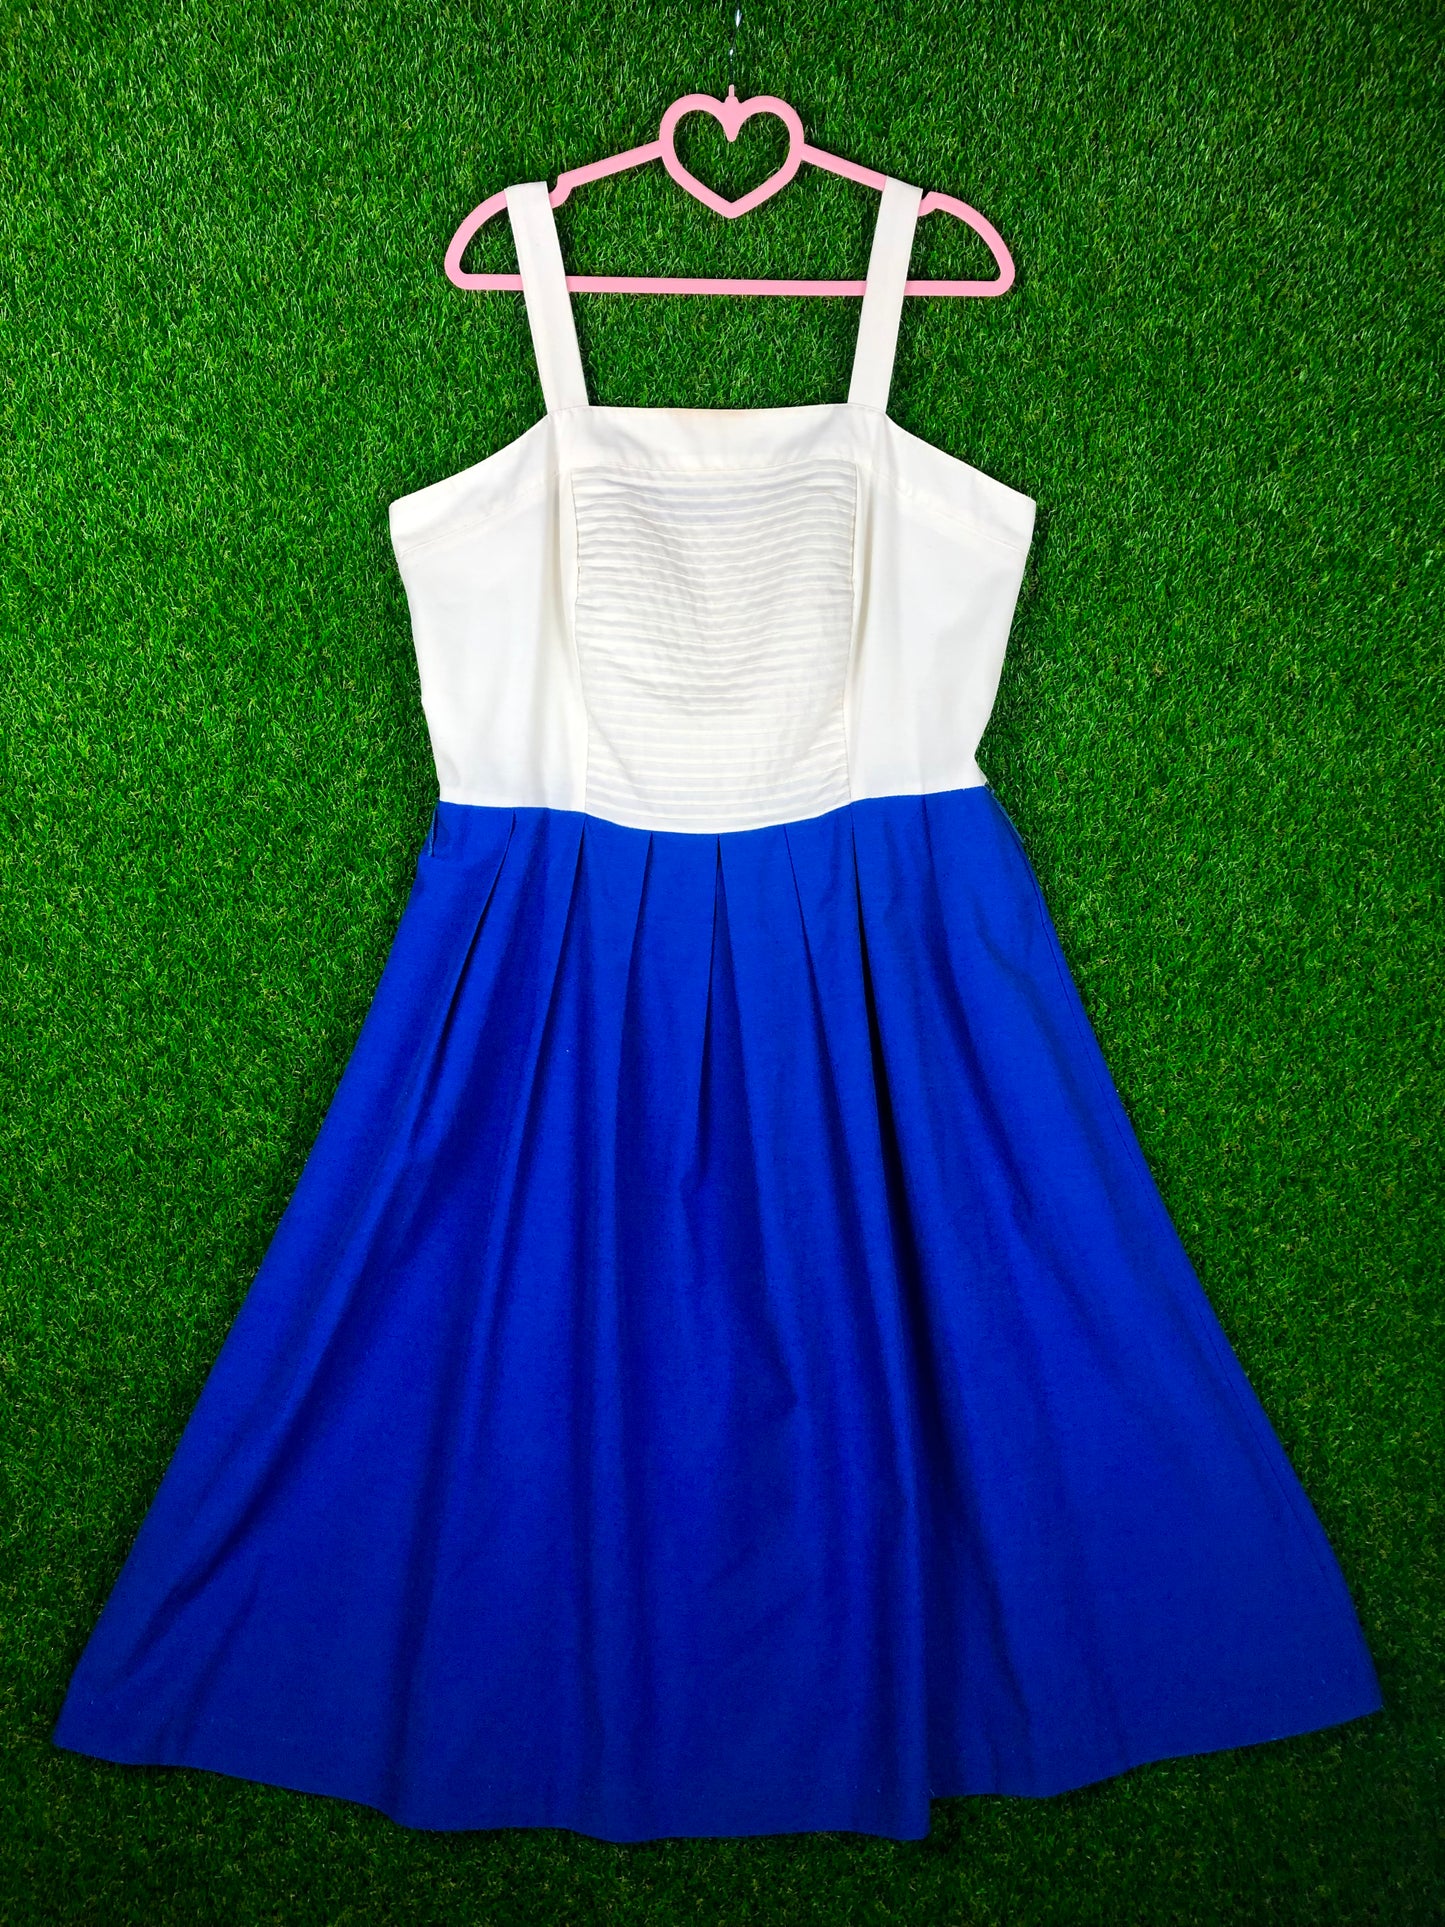 1980's Light Blue and White Summer Dress